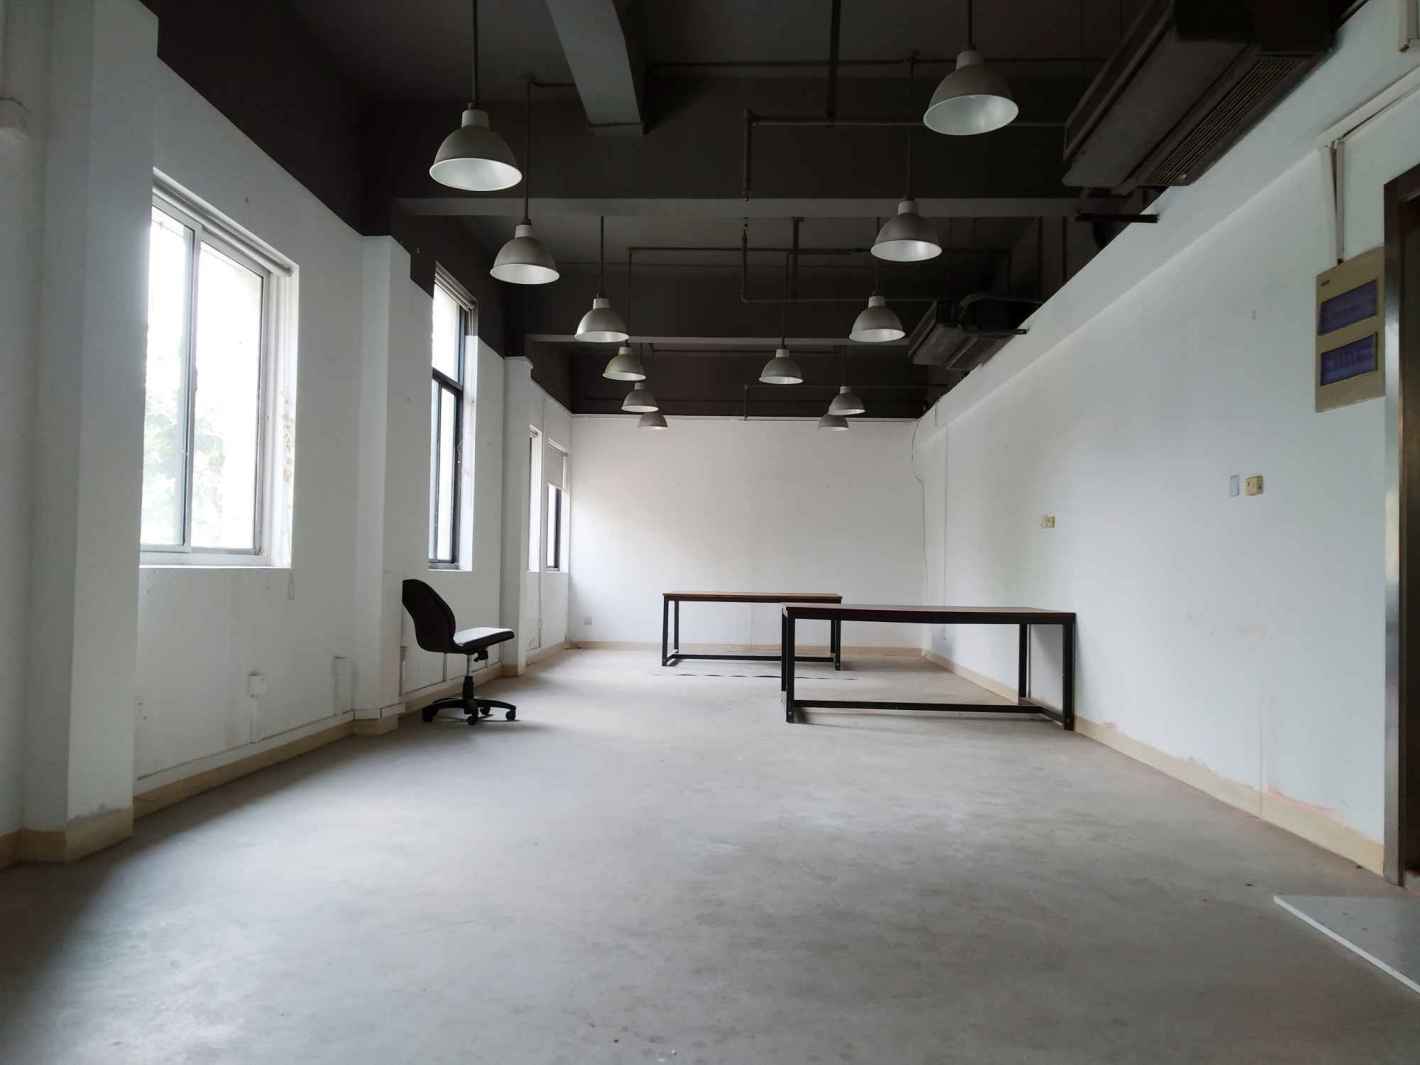 智慧桥创意产业园91平米办公室出租-租金价格3.35元/m²/天